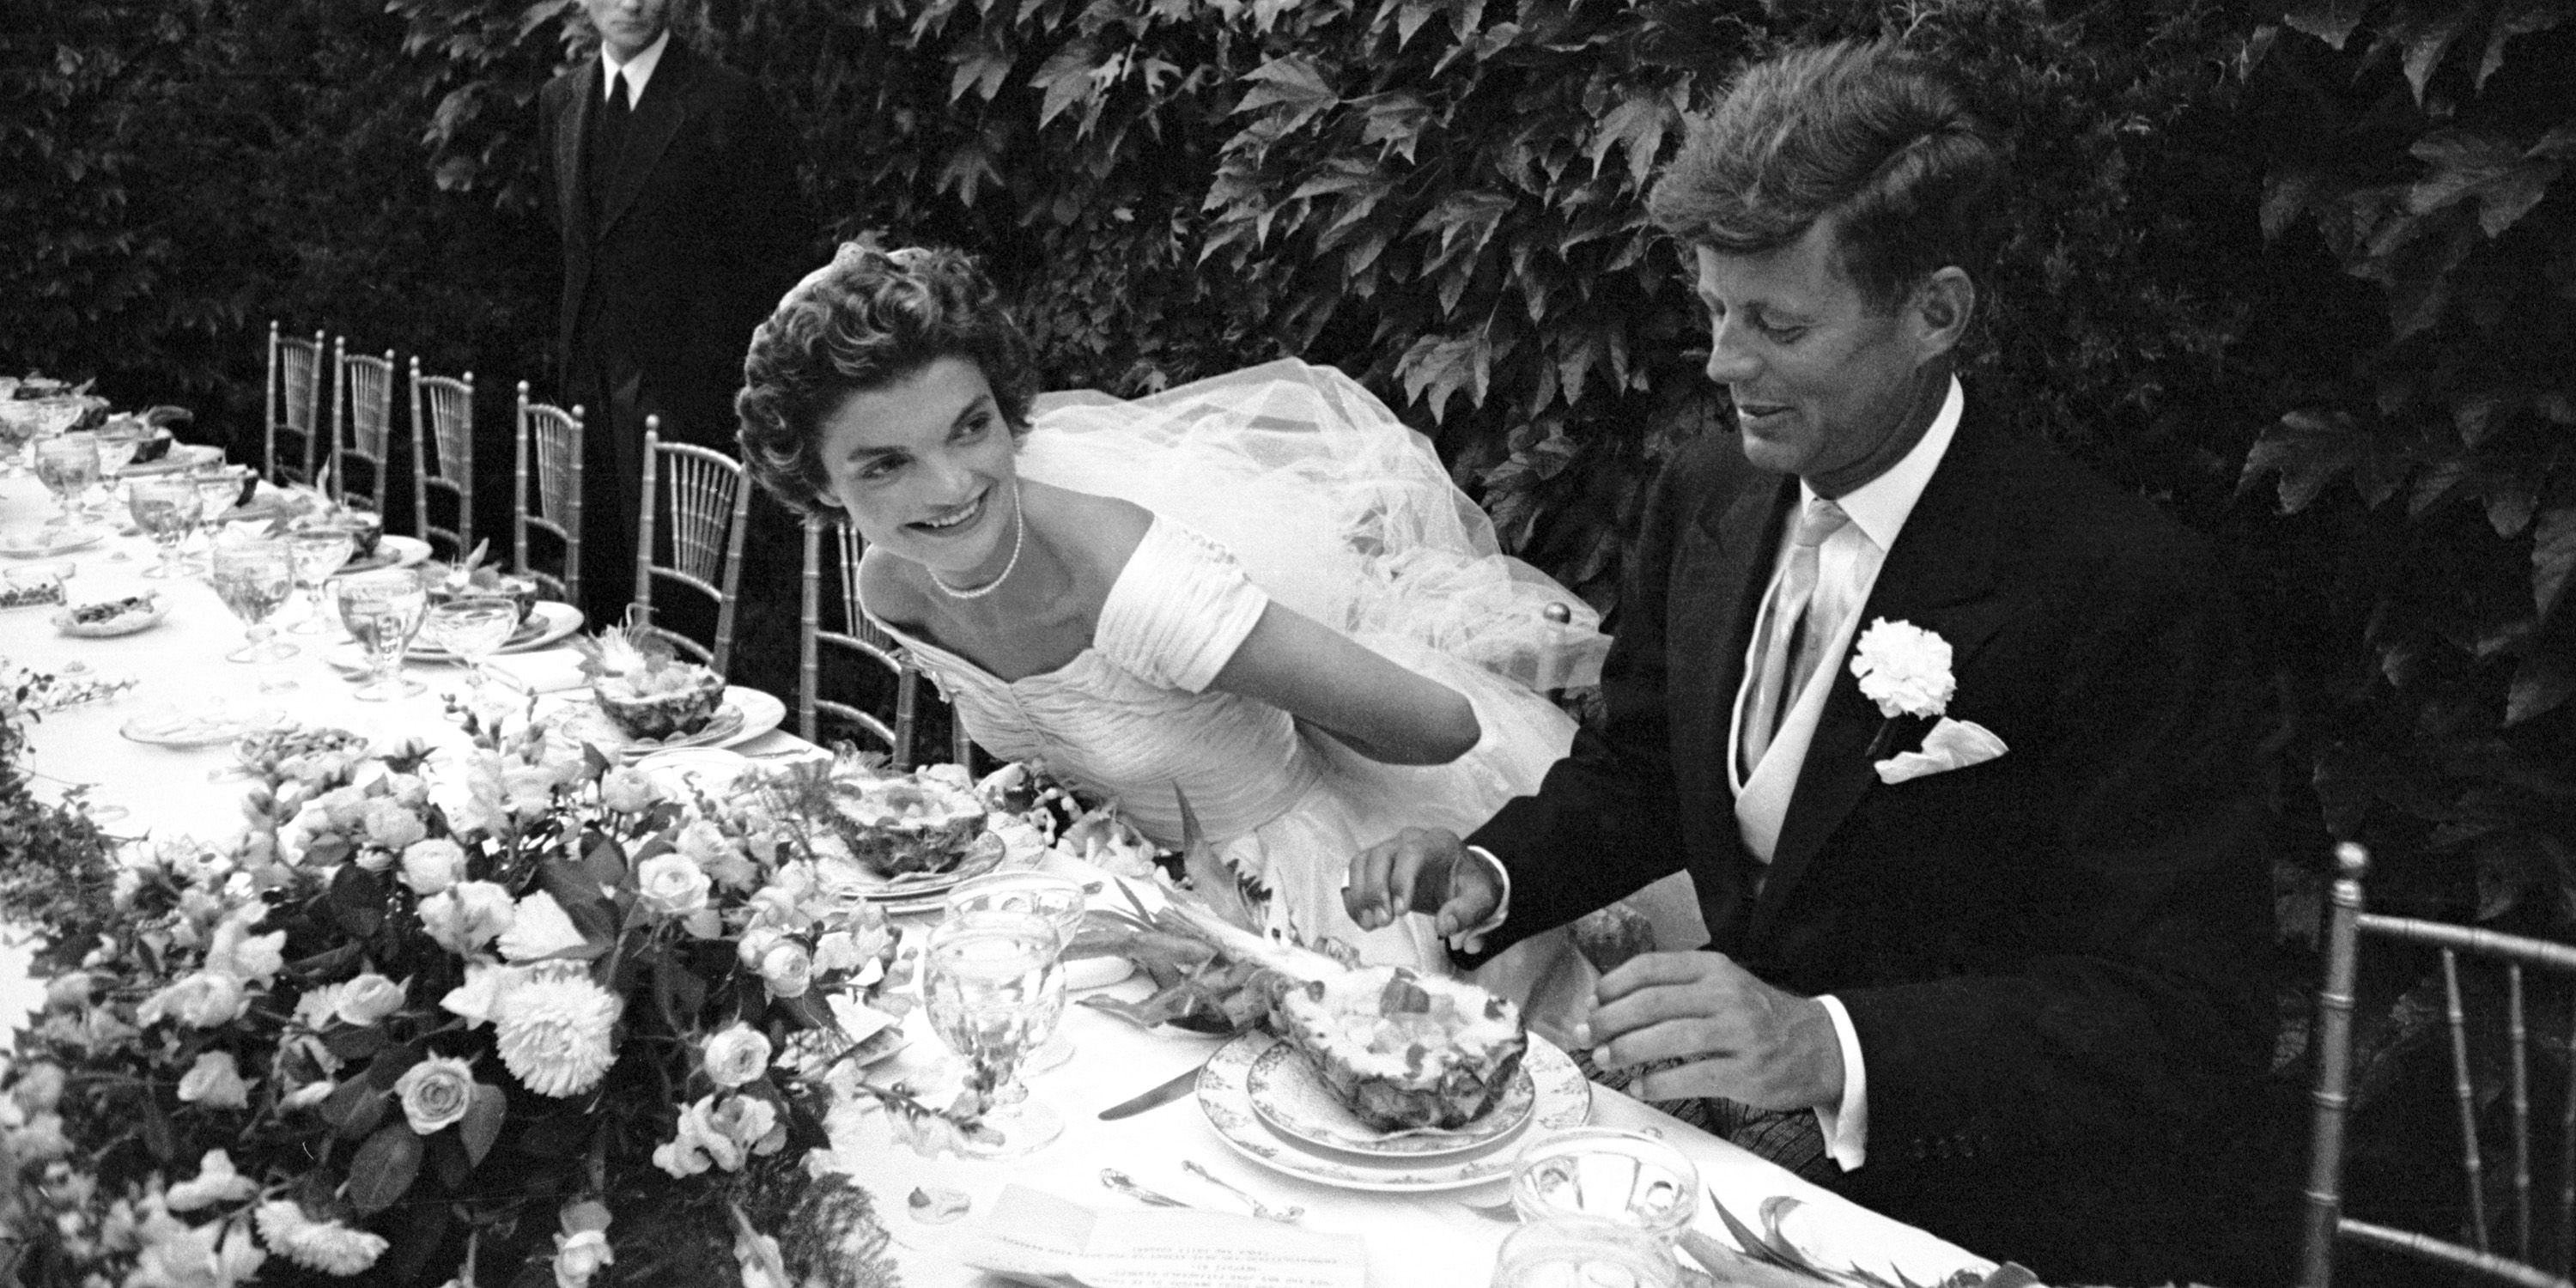 Photos of Celebrities on Their Wedding Day - Vintage Celeb Photos